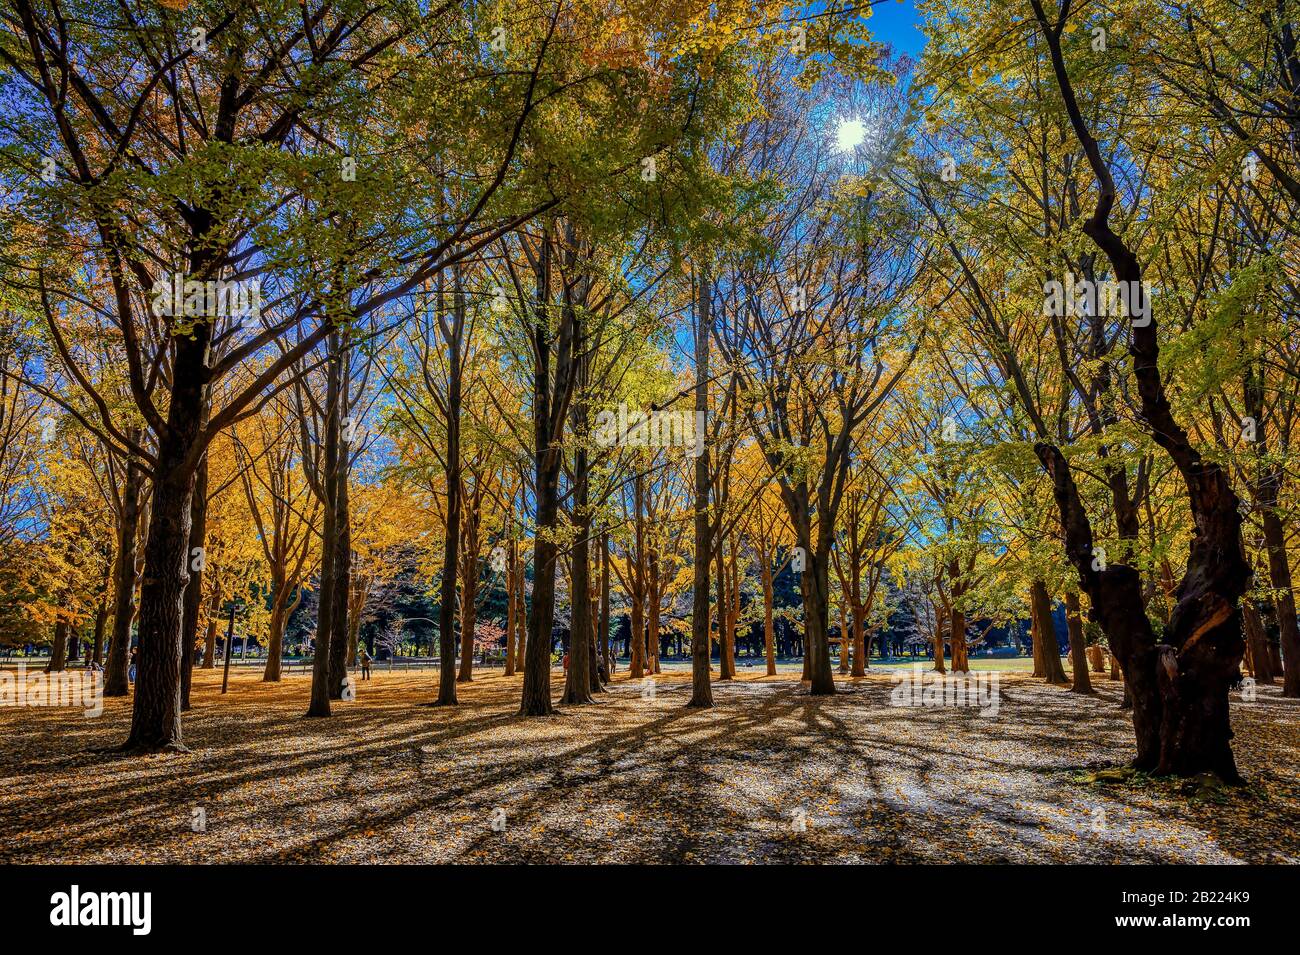 Japanische Maples und Gingko-Bäume verleihen einem Park in Tokio, Japan Herbstfarben Stockfoto